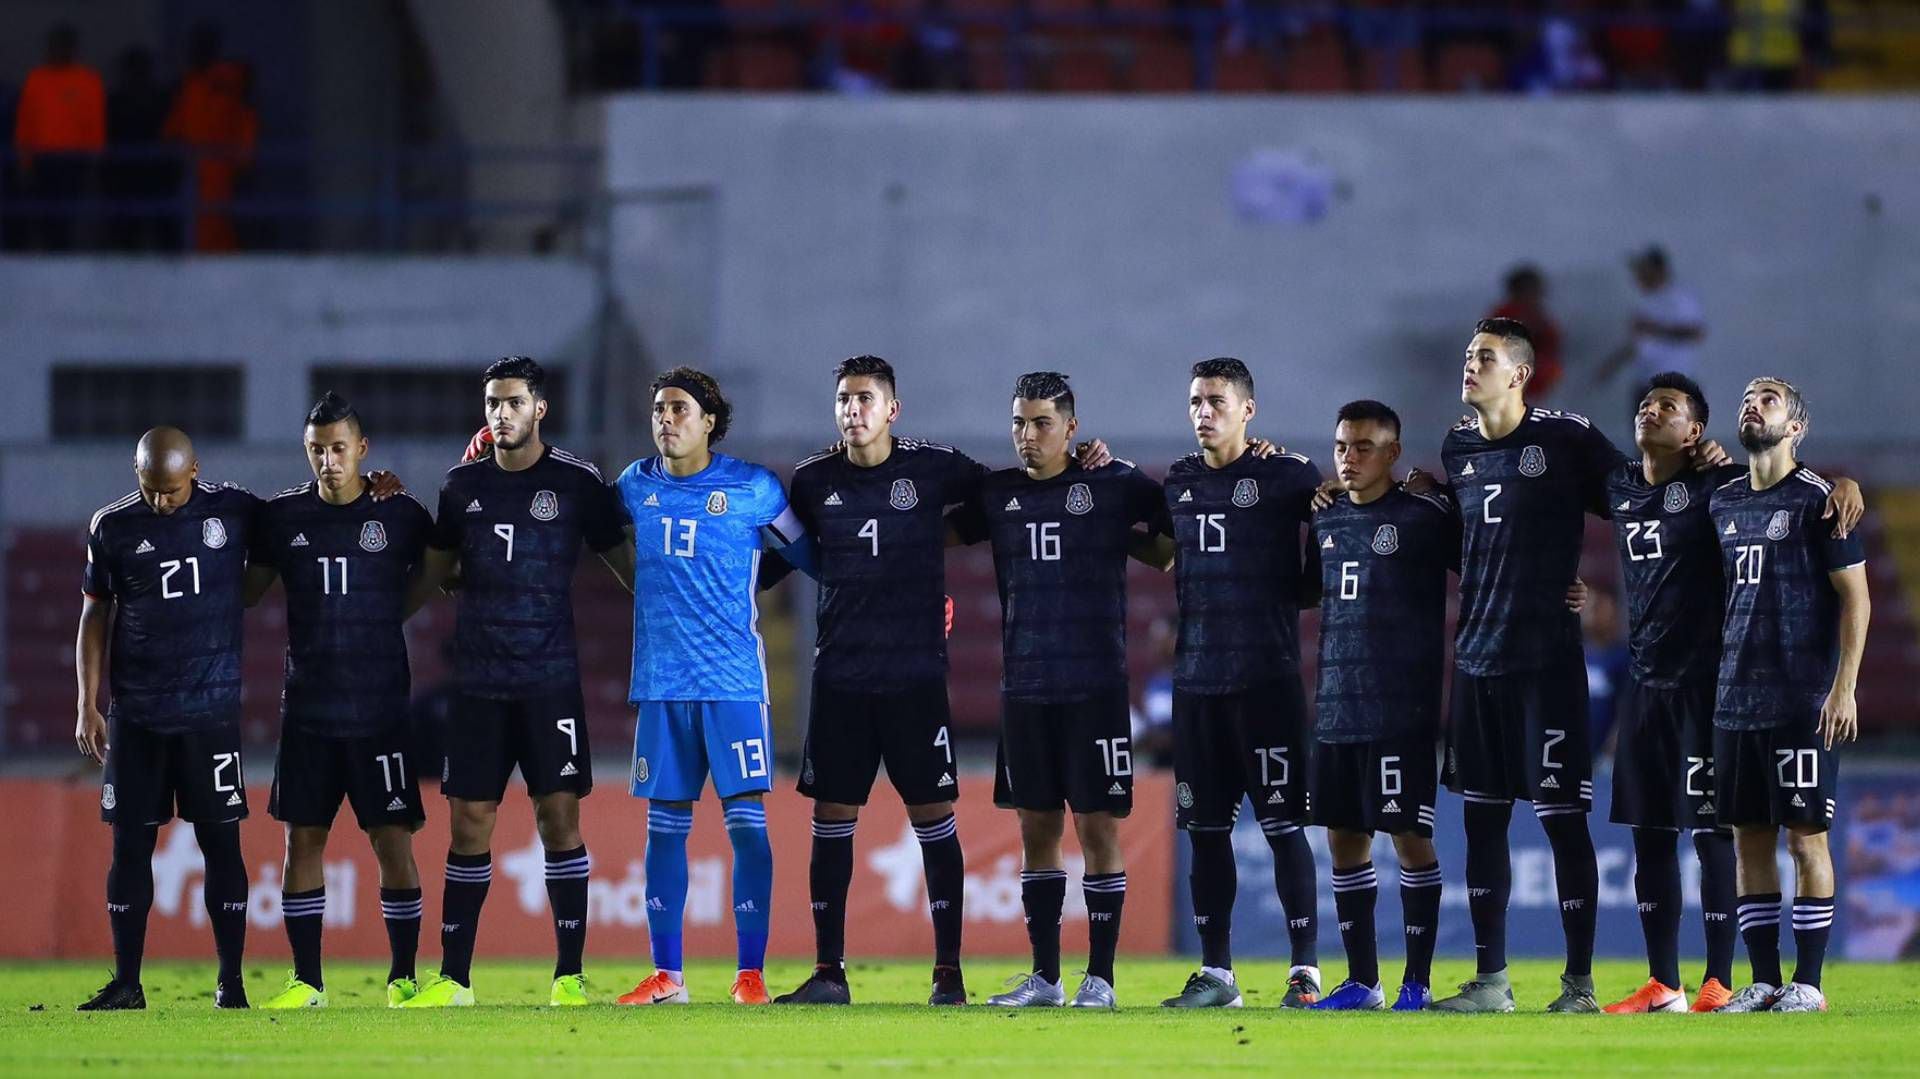 La selección mexicana ha sufrido por la suspensión y cancelación de torneos (Foto: Twitter @miseleccionmx)